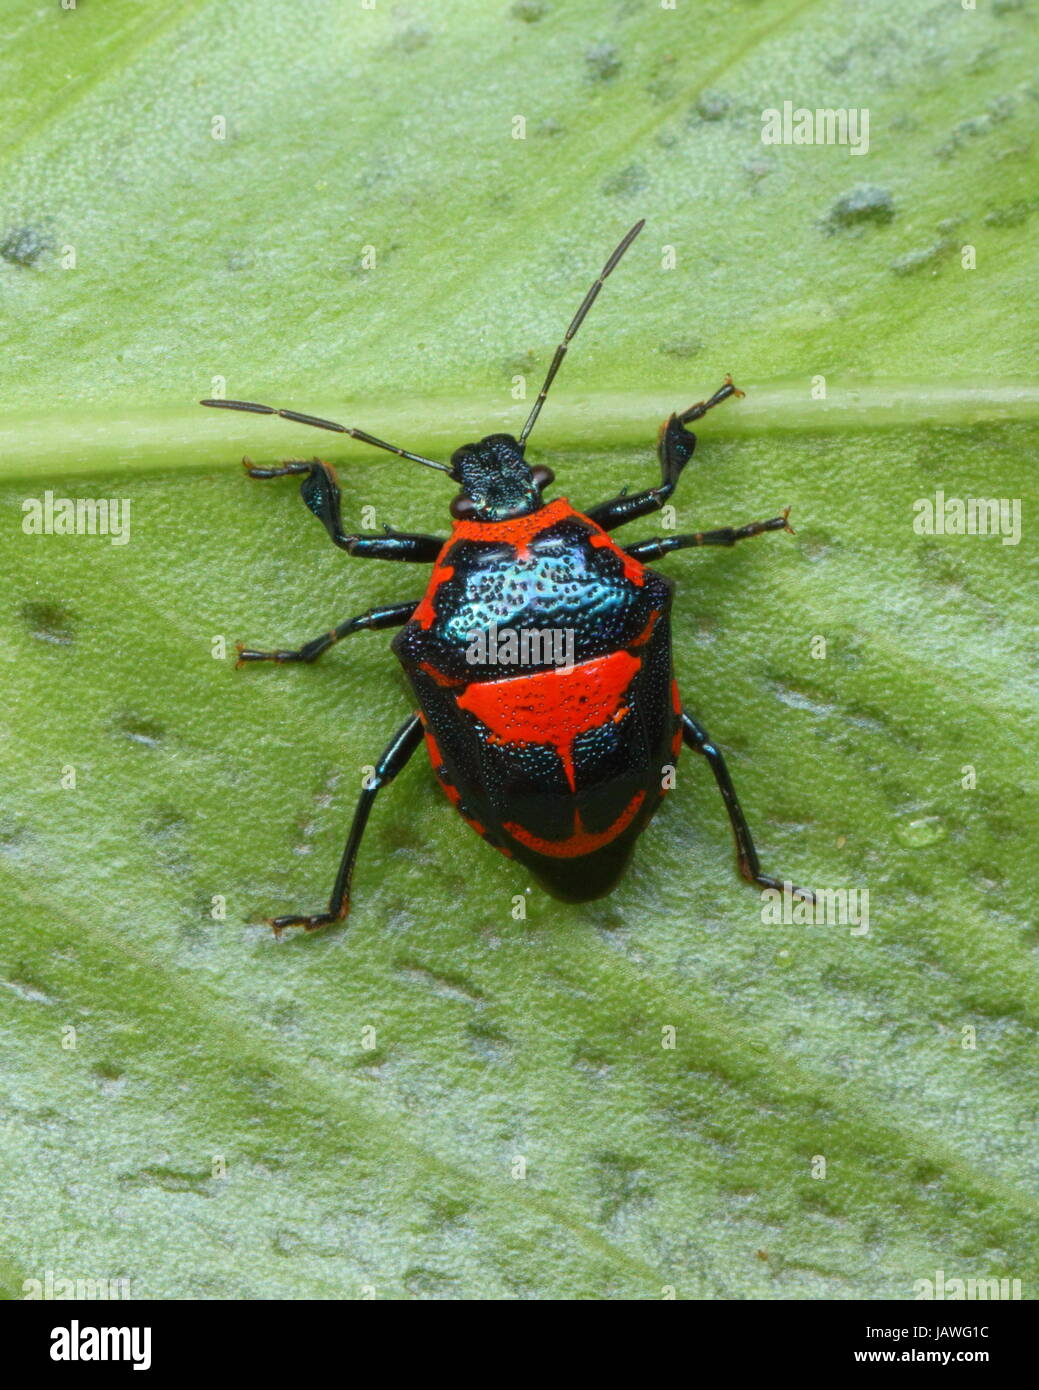 A predatory anchor stink bug, Stiretrus anchorago, crawling on a leaf. Stock Photo